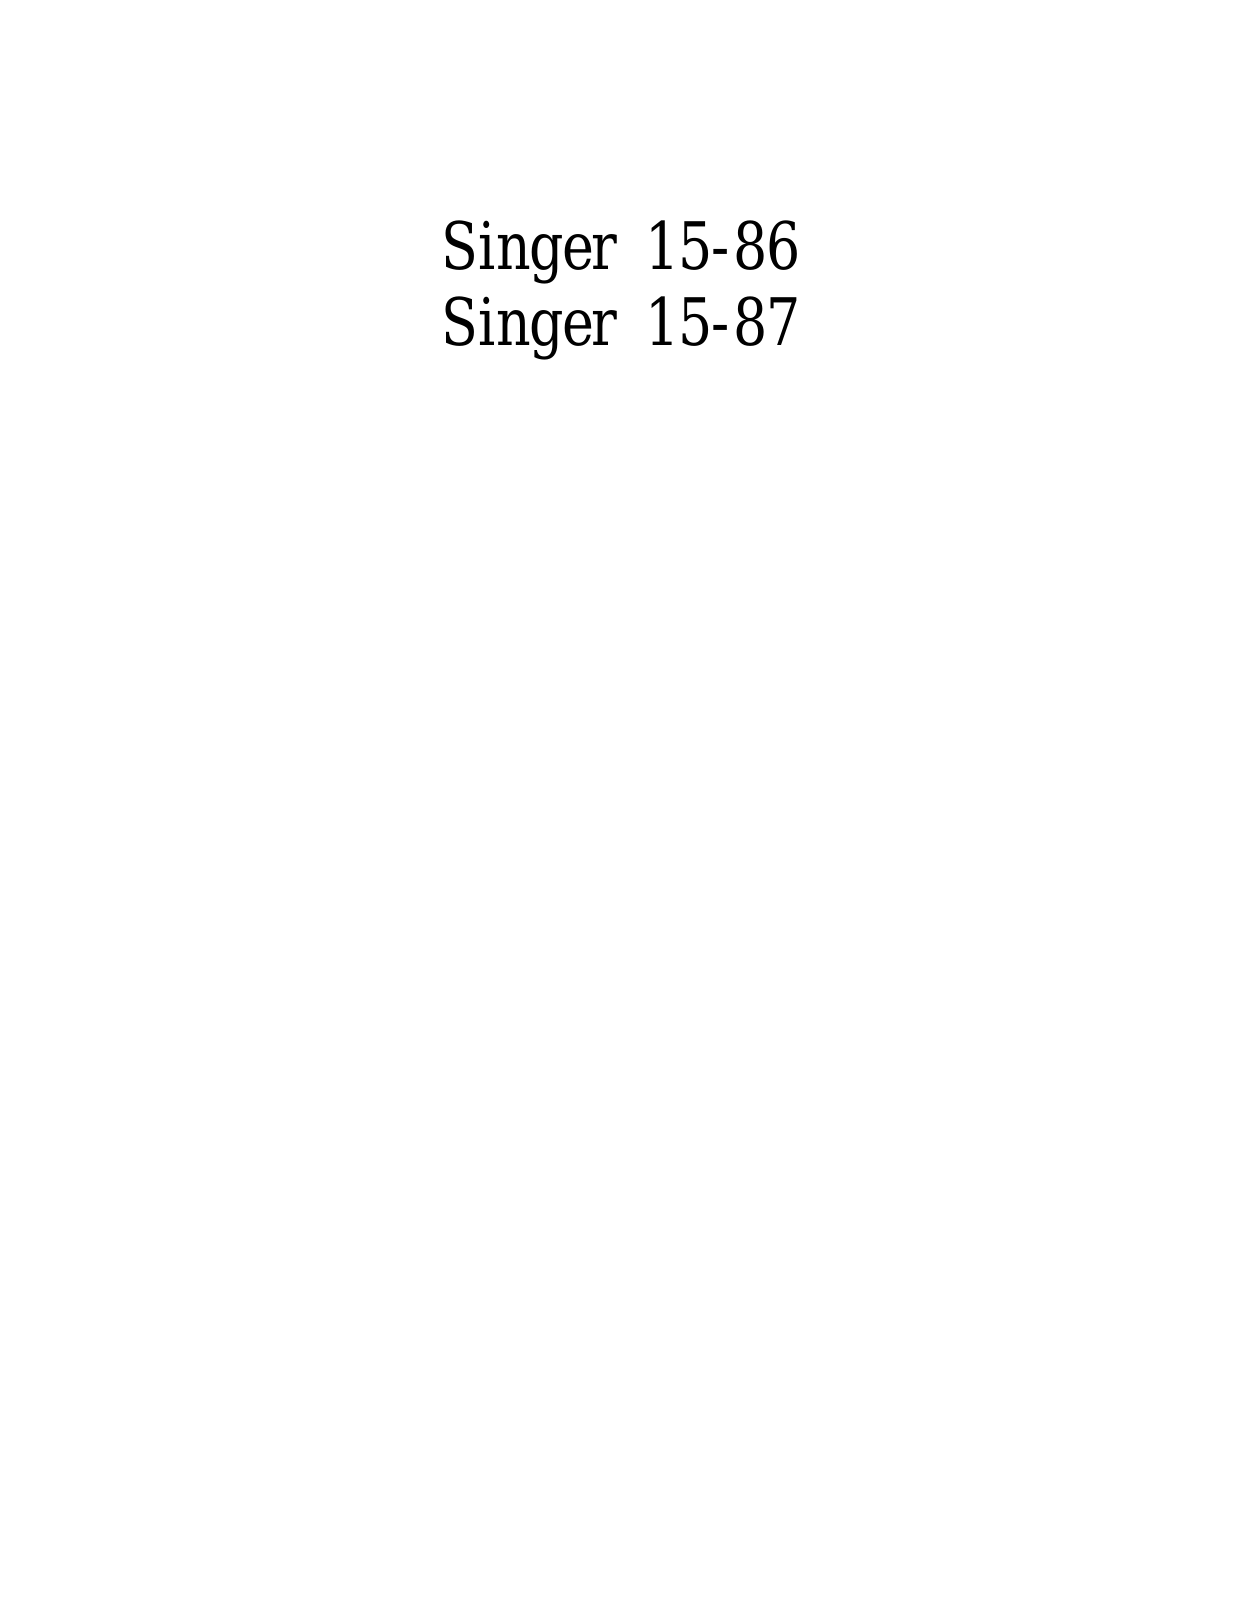 SINGER 15-86, 15-87 Parts List